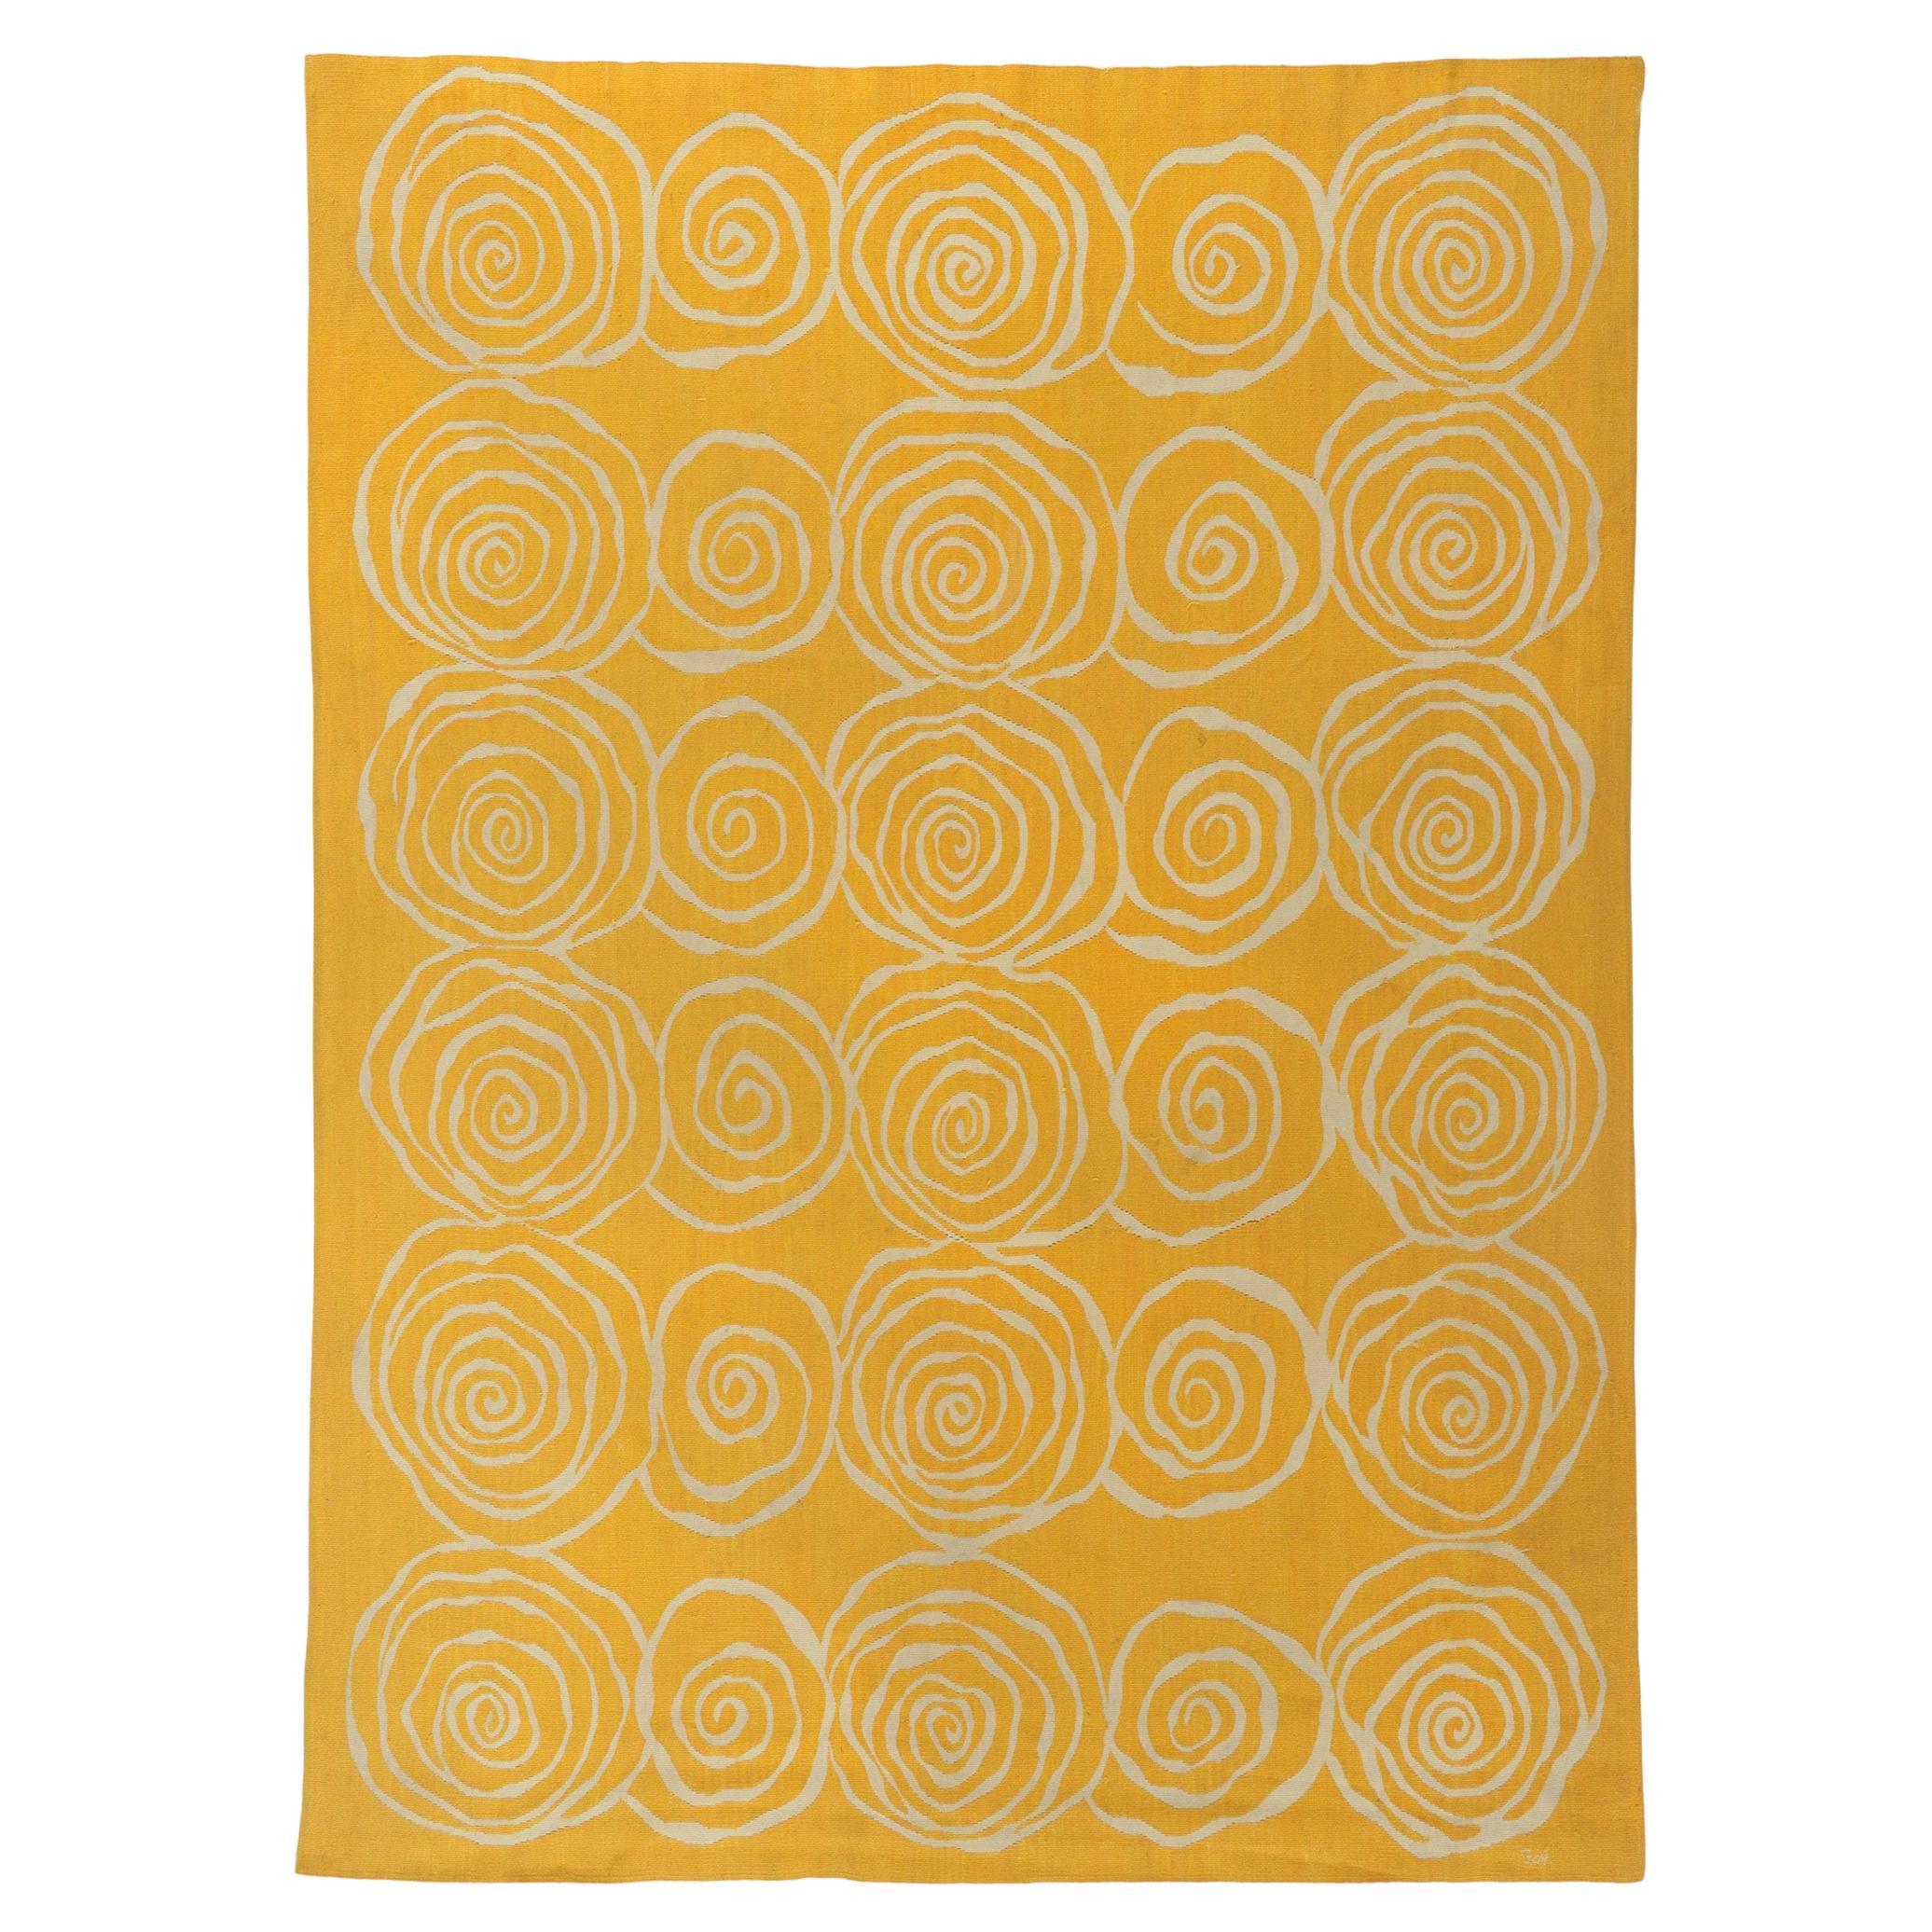 Nouveau tapis Kilim contemporain jaune